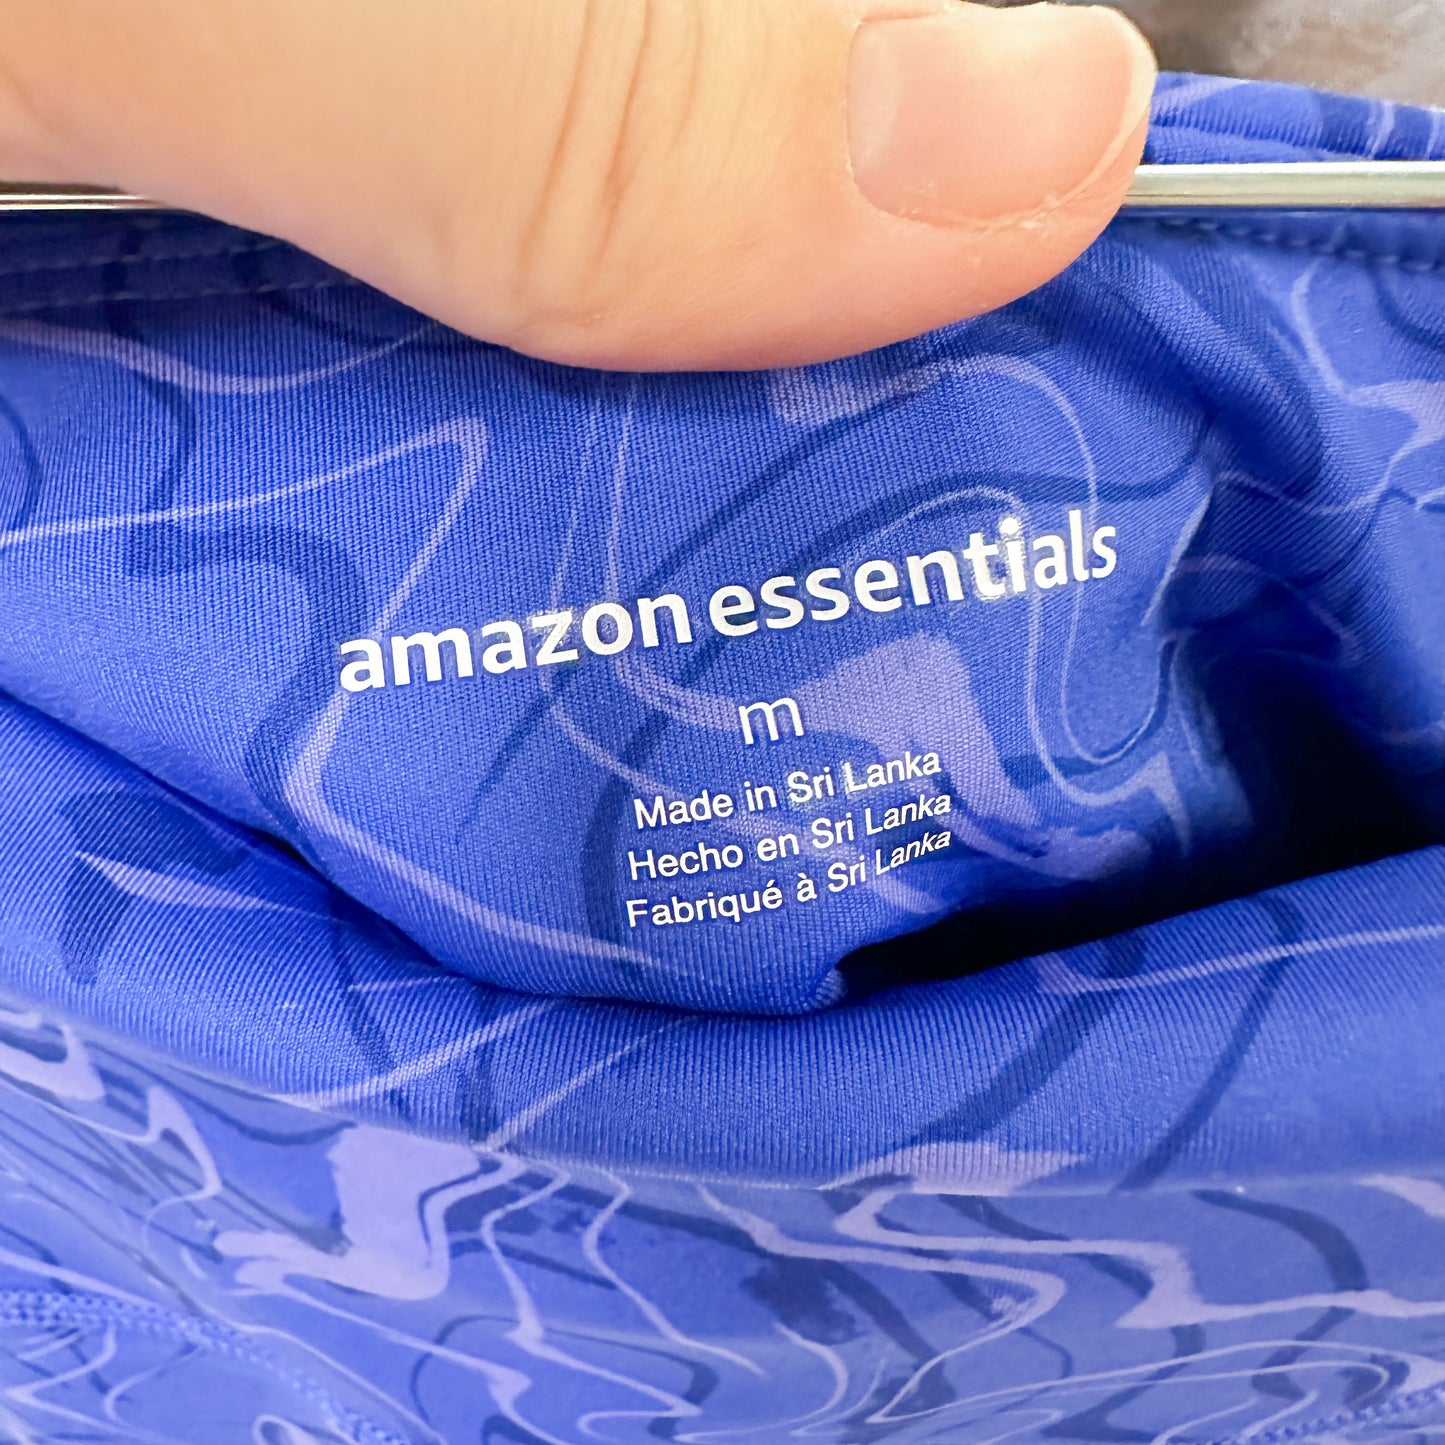 Amazon Essentials Marble High Rise Leggings Size Medium